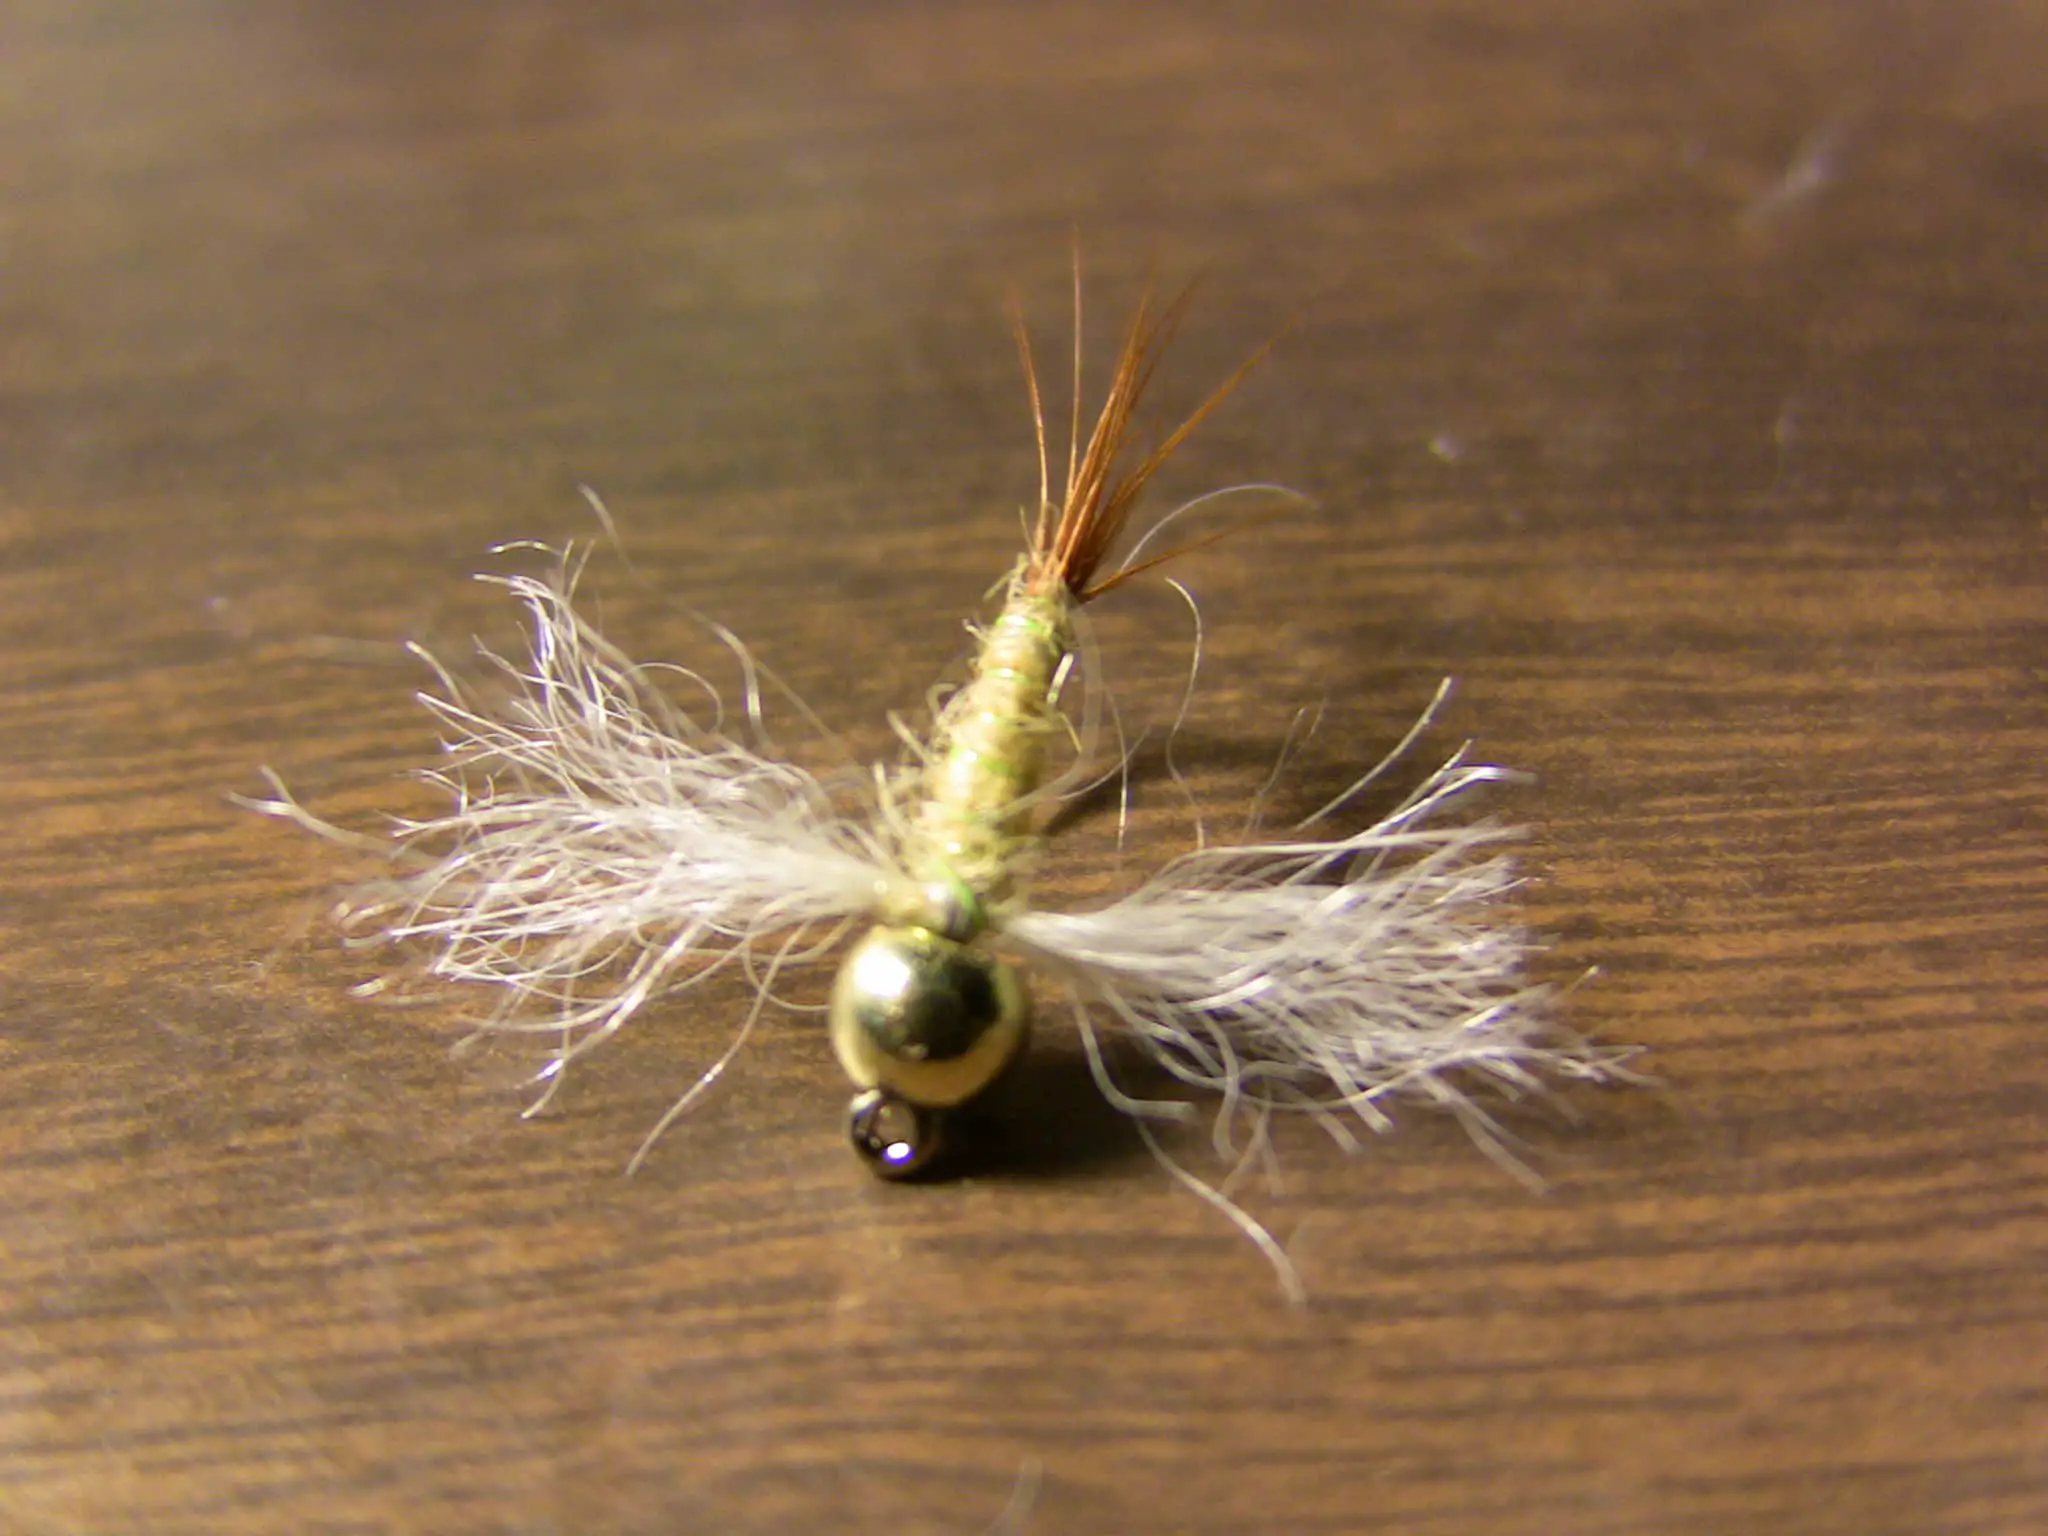 Beadhead spinner mayfly